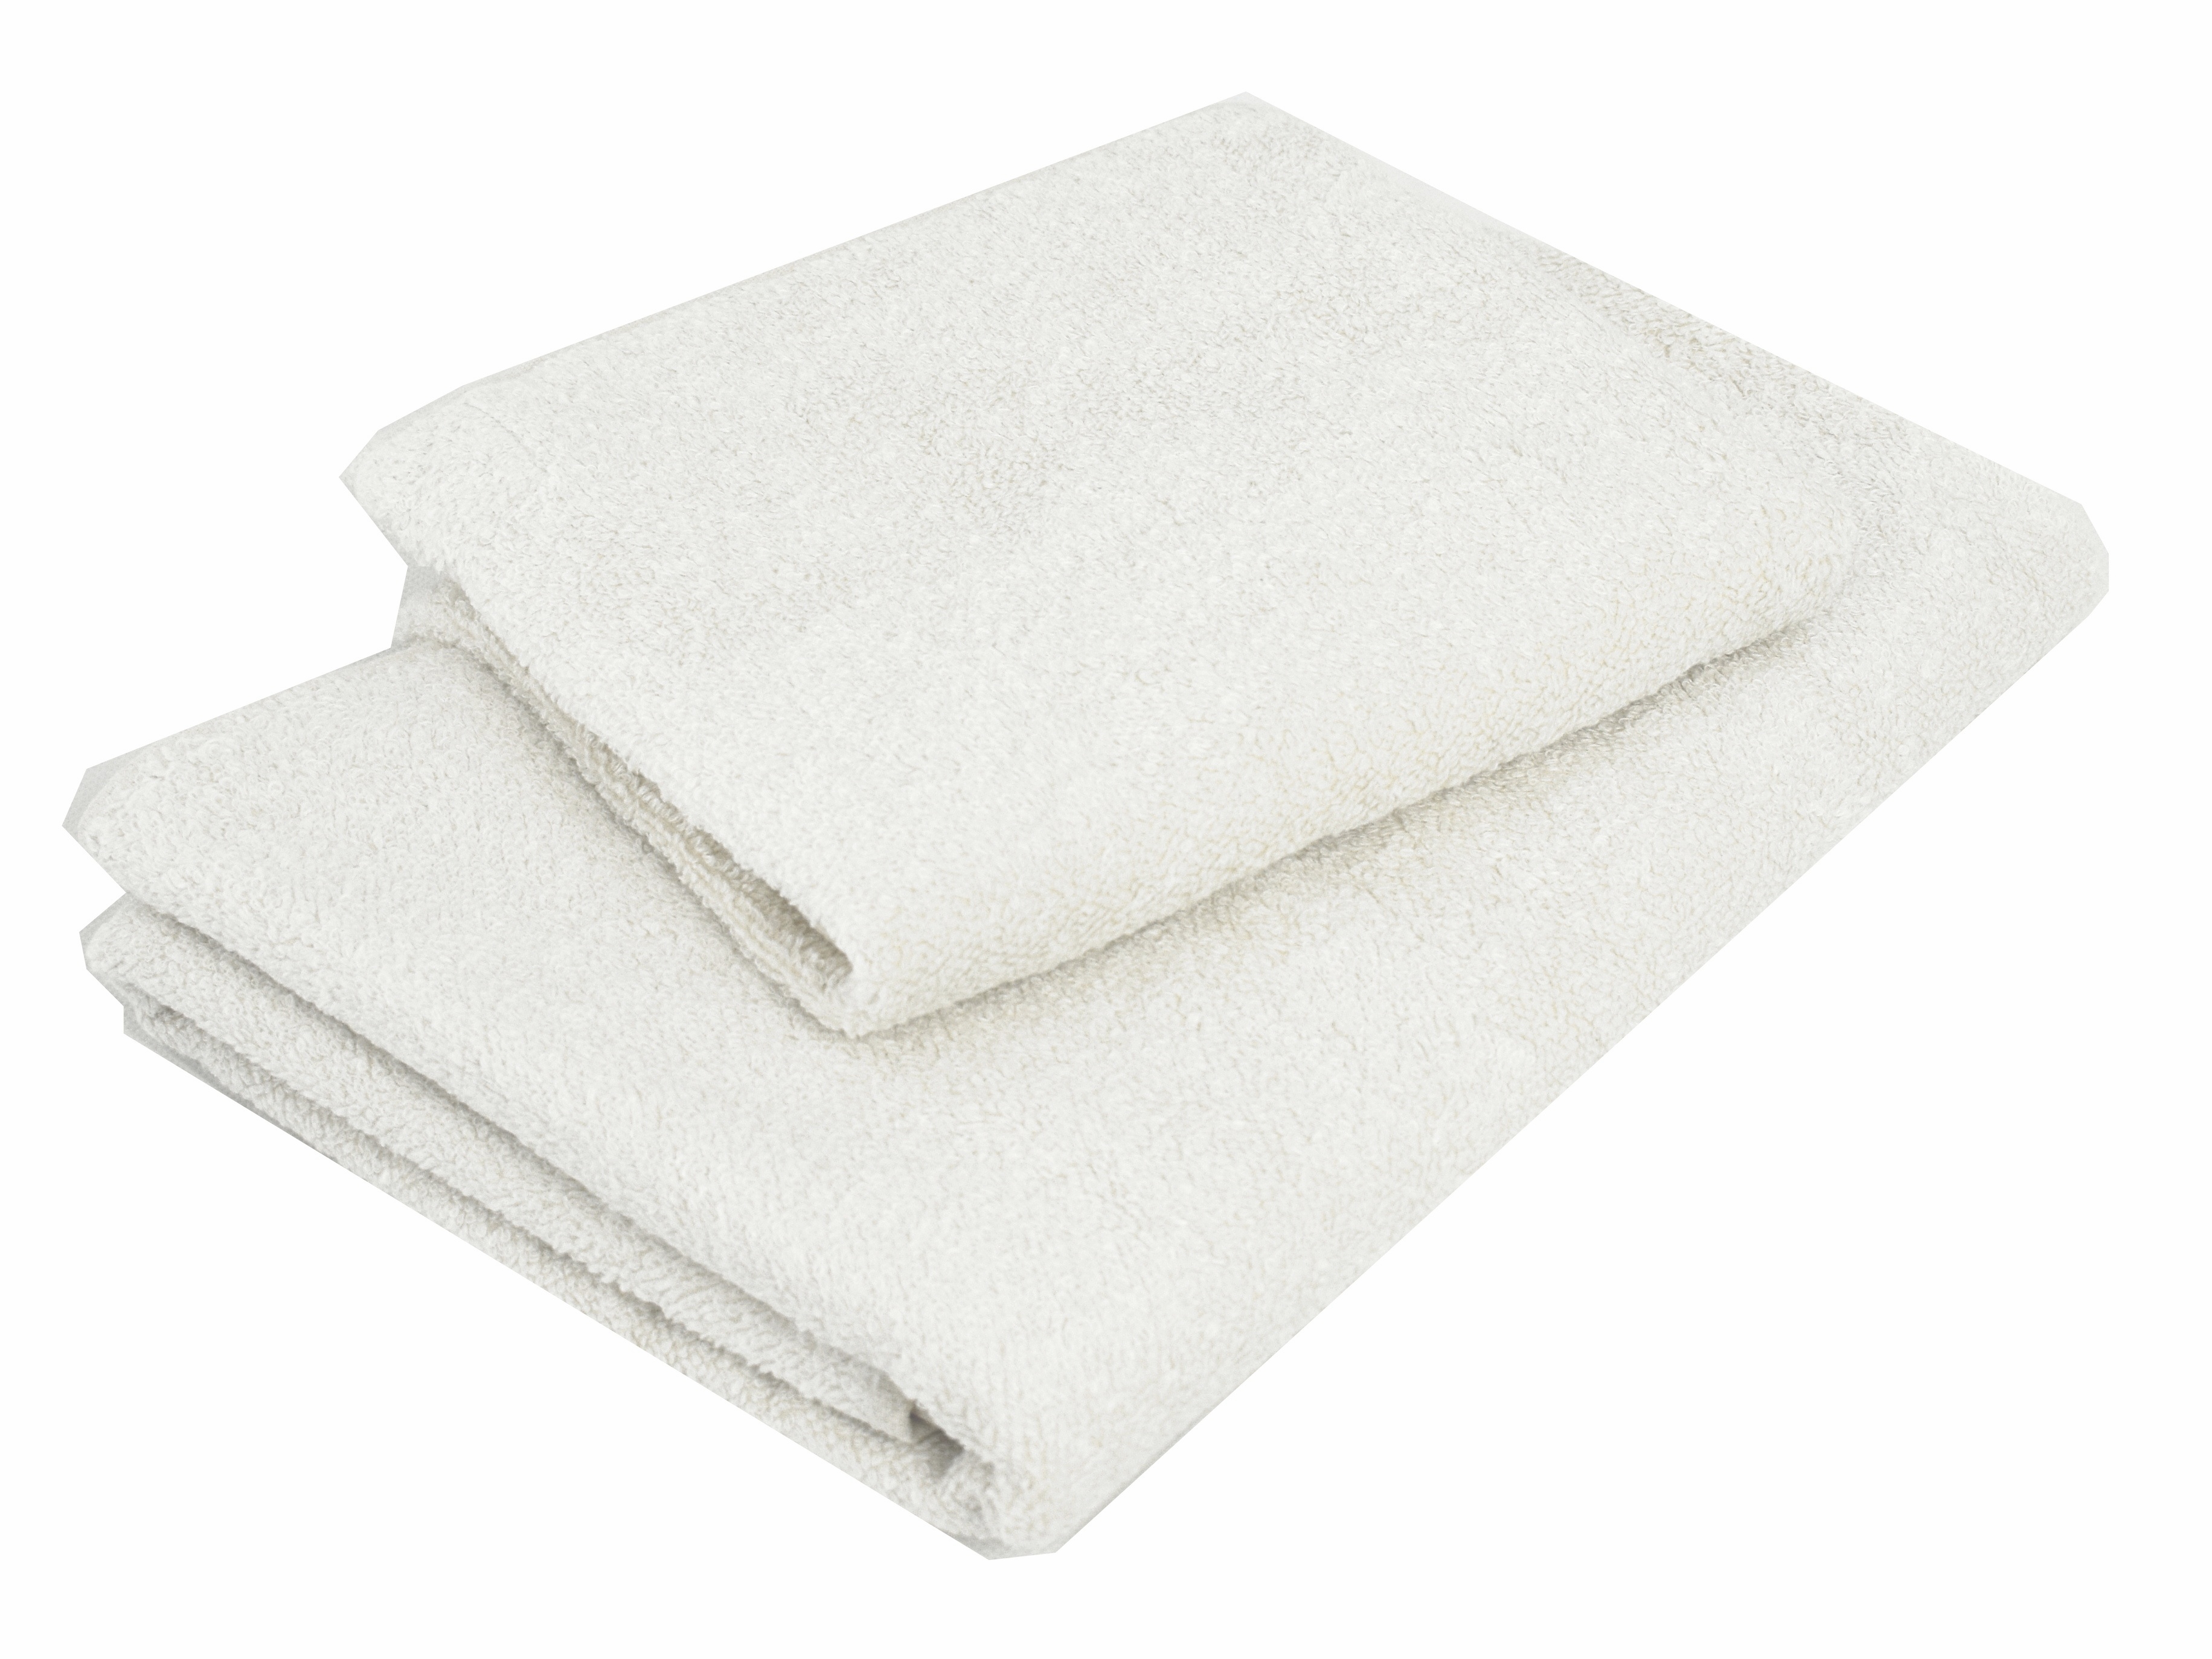 Lněný ručník měkký bílý 45 x 90 cm